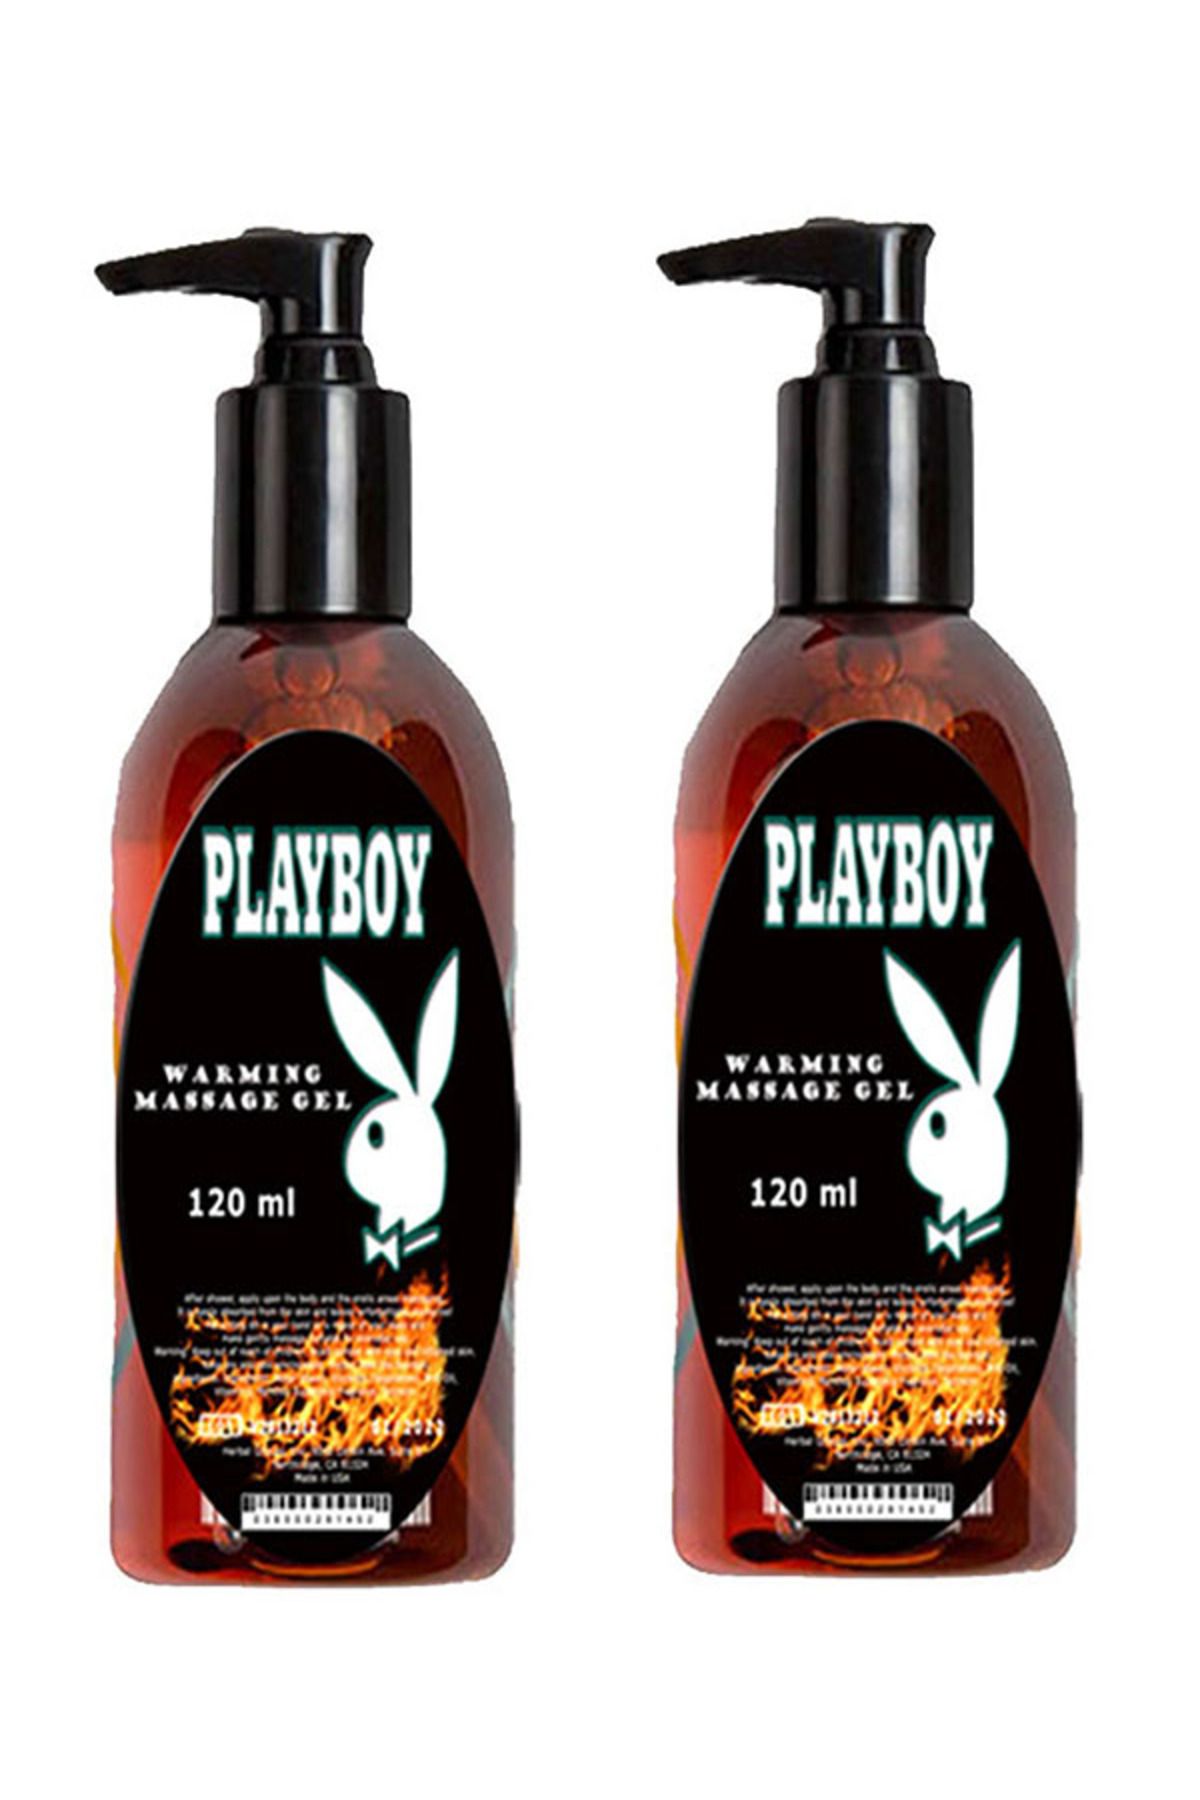 Playboy Isıtıcılı Masaj Yağı / Warming Massage Oil 120ml X 2 ad